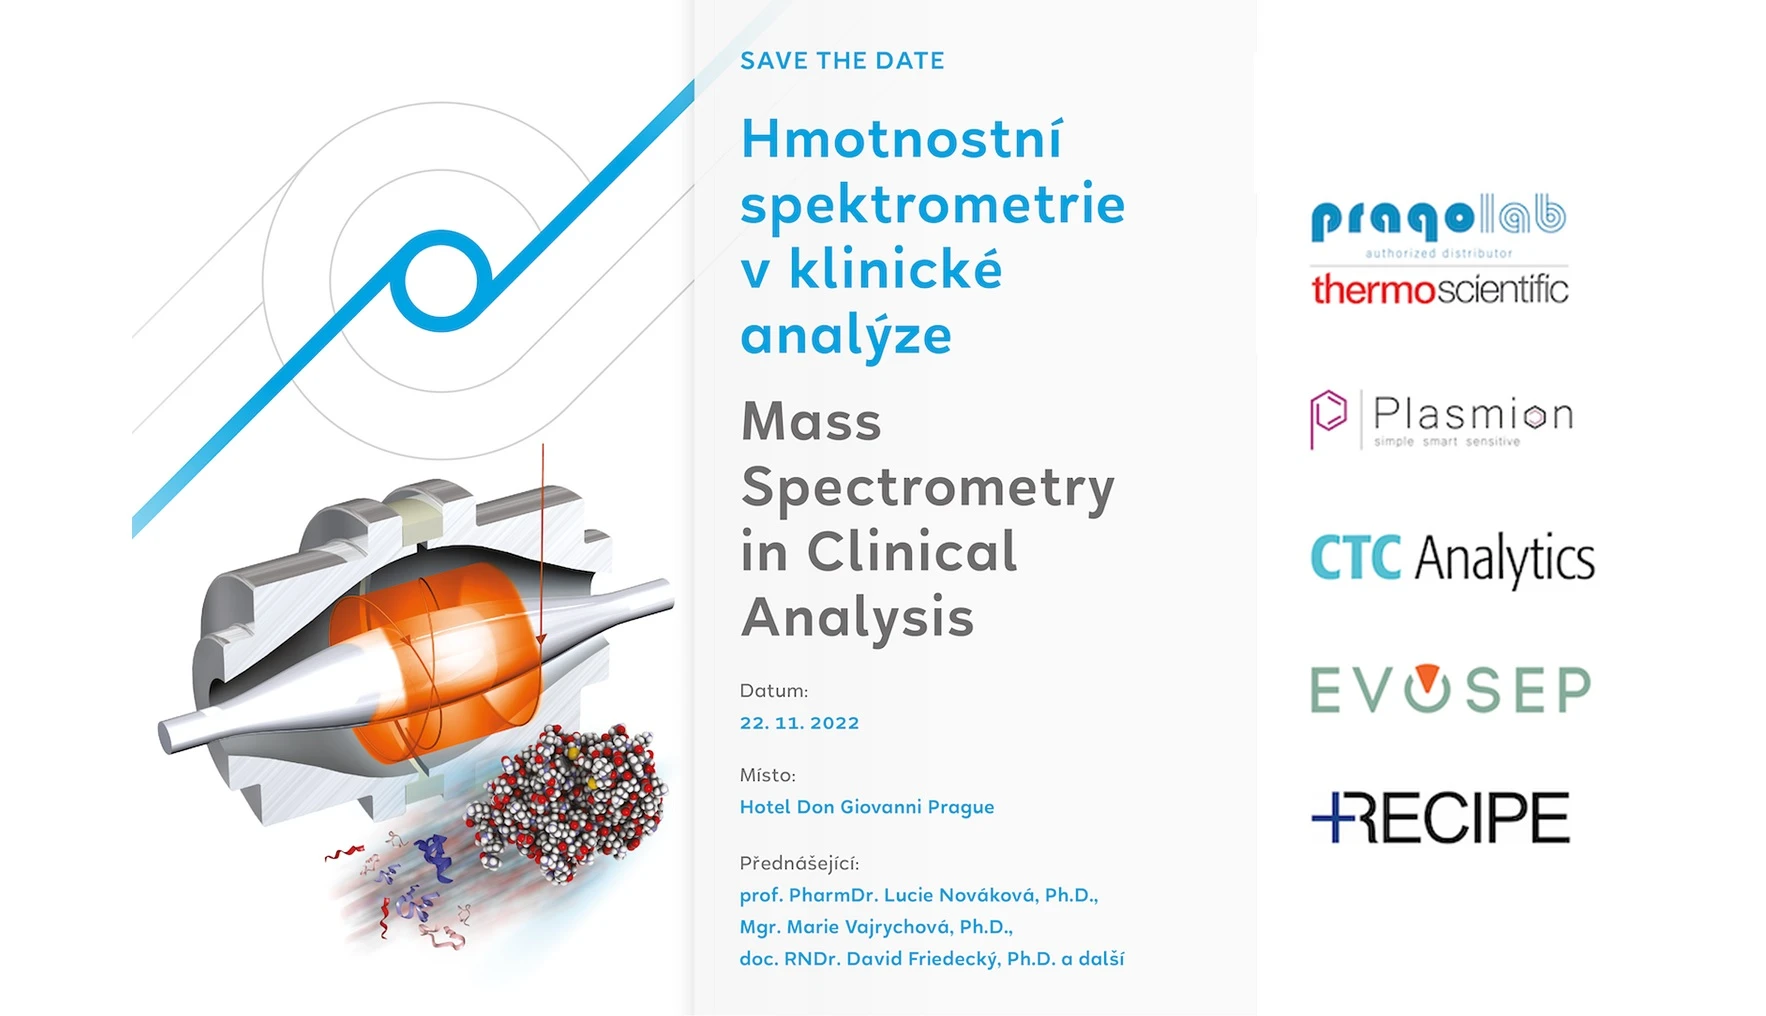 Pragolab: Hmotnostní spektrometrie v klinické analýze